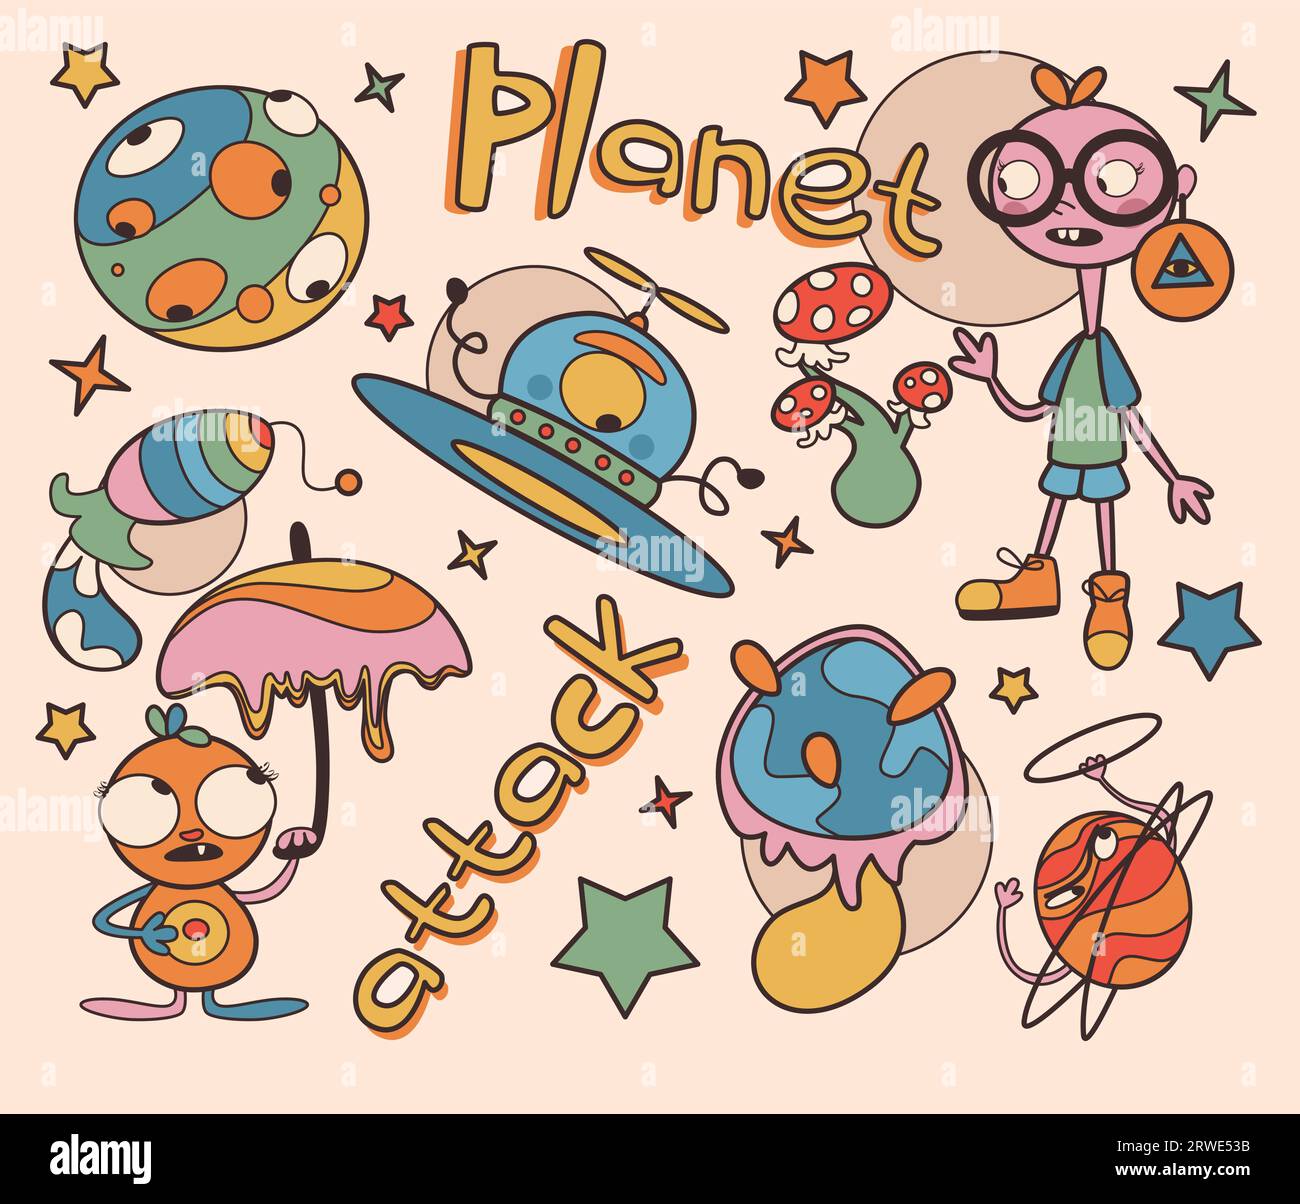 Sfondo vaporwave con creature astratte e oggetti isolati su sfondo beige. Illustrazione vettoriale di pianeti alieni, razzi e veicoli spaziali, stelle, personaggio con ombrello, funghi Illustrazione Vettoriale